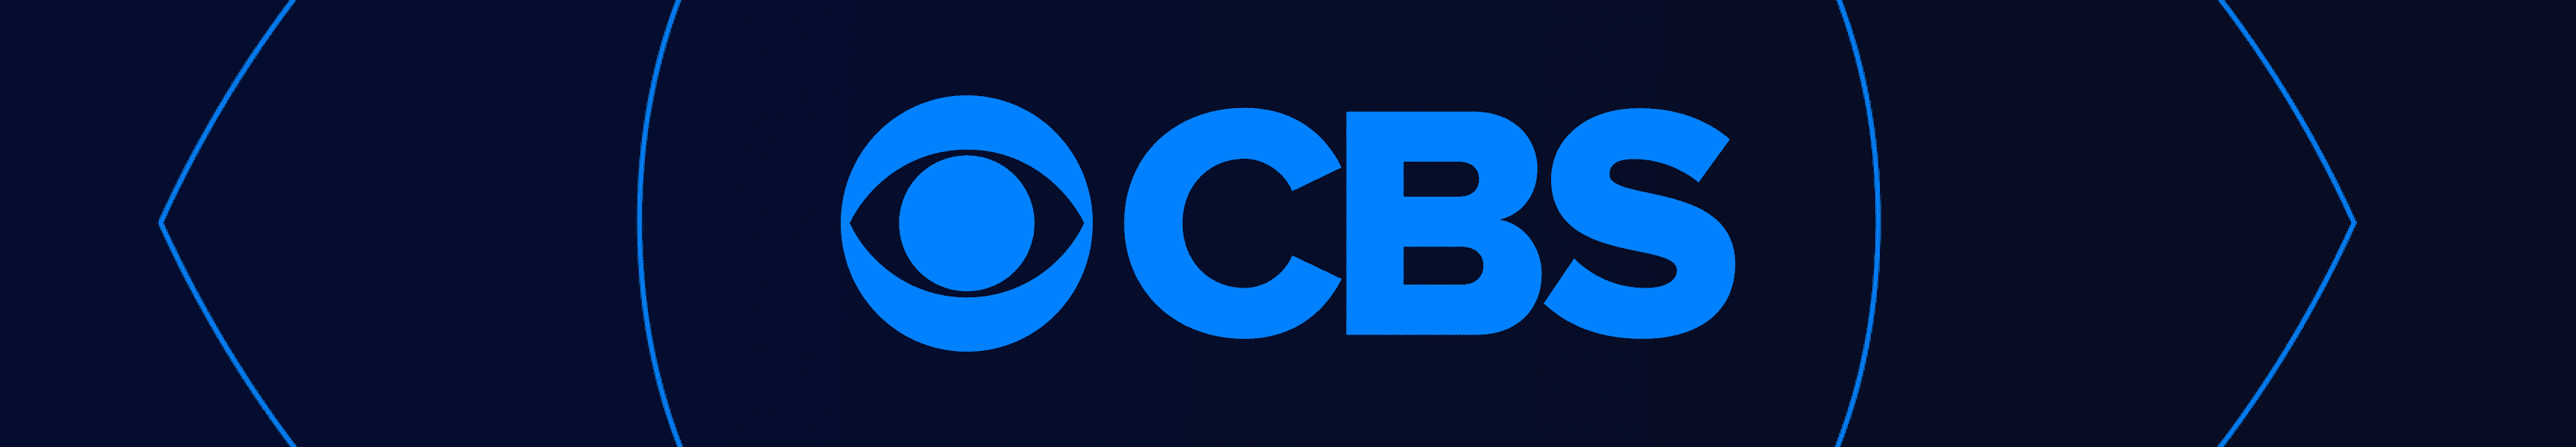 CBS Entertainment Fundas de teléfono